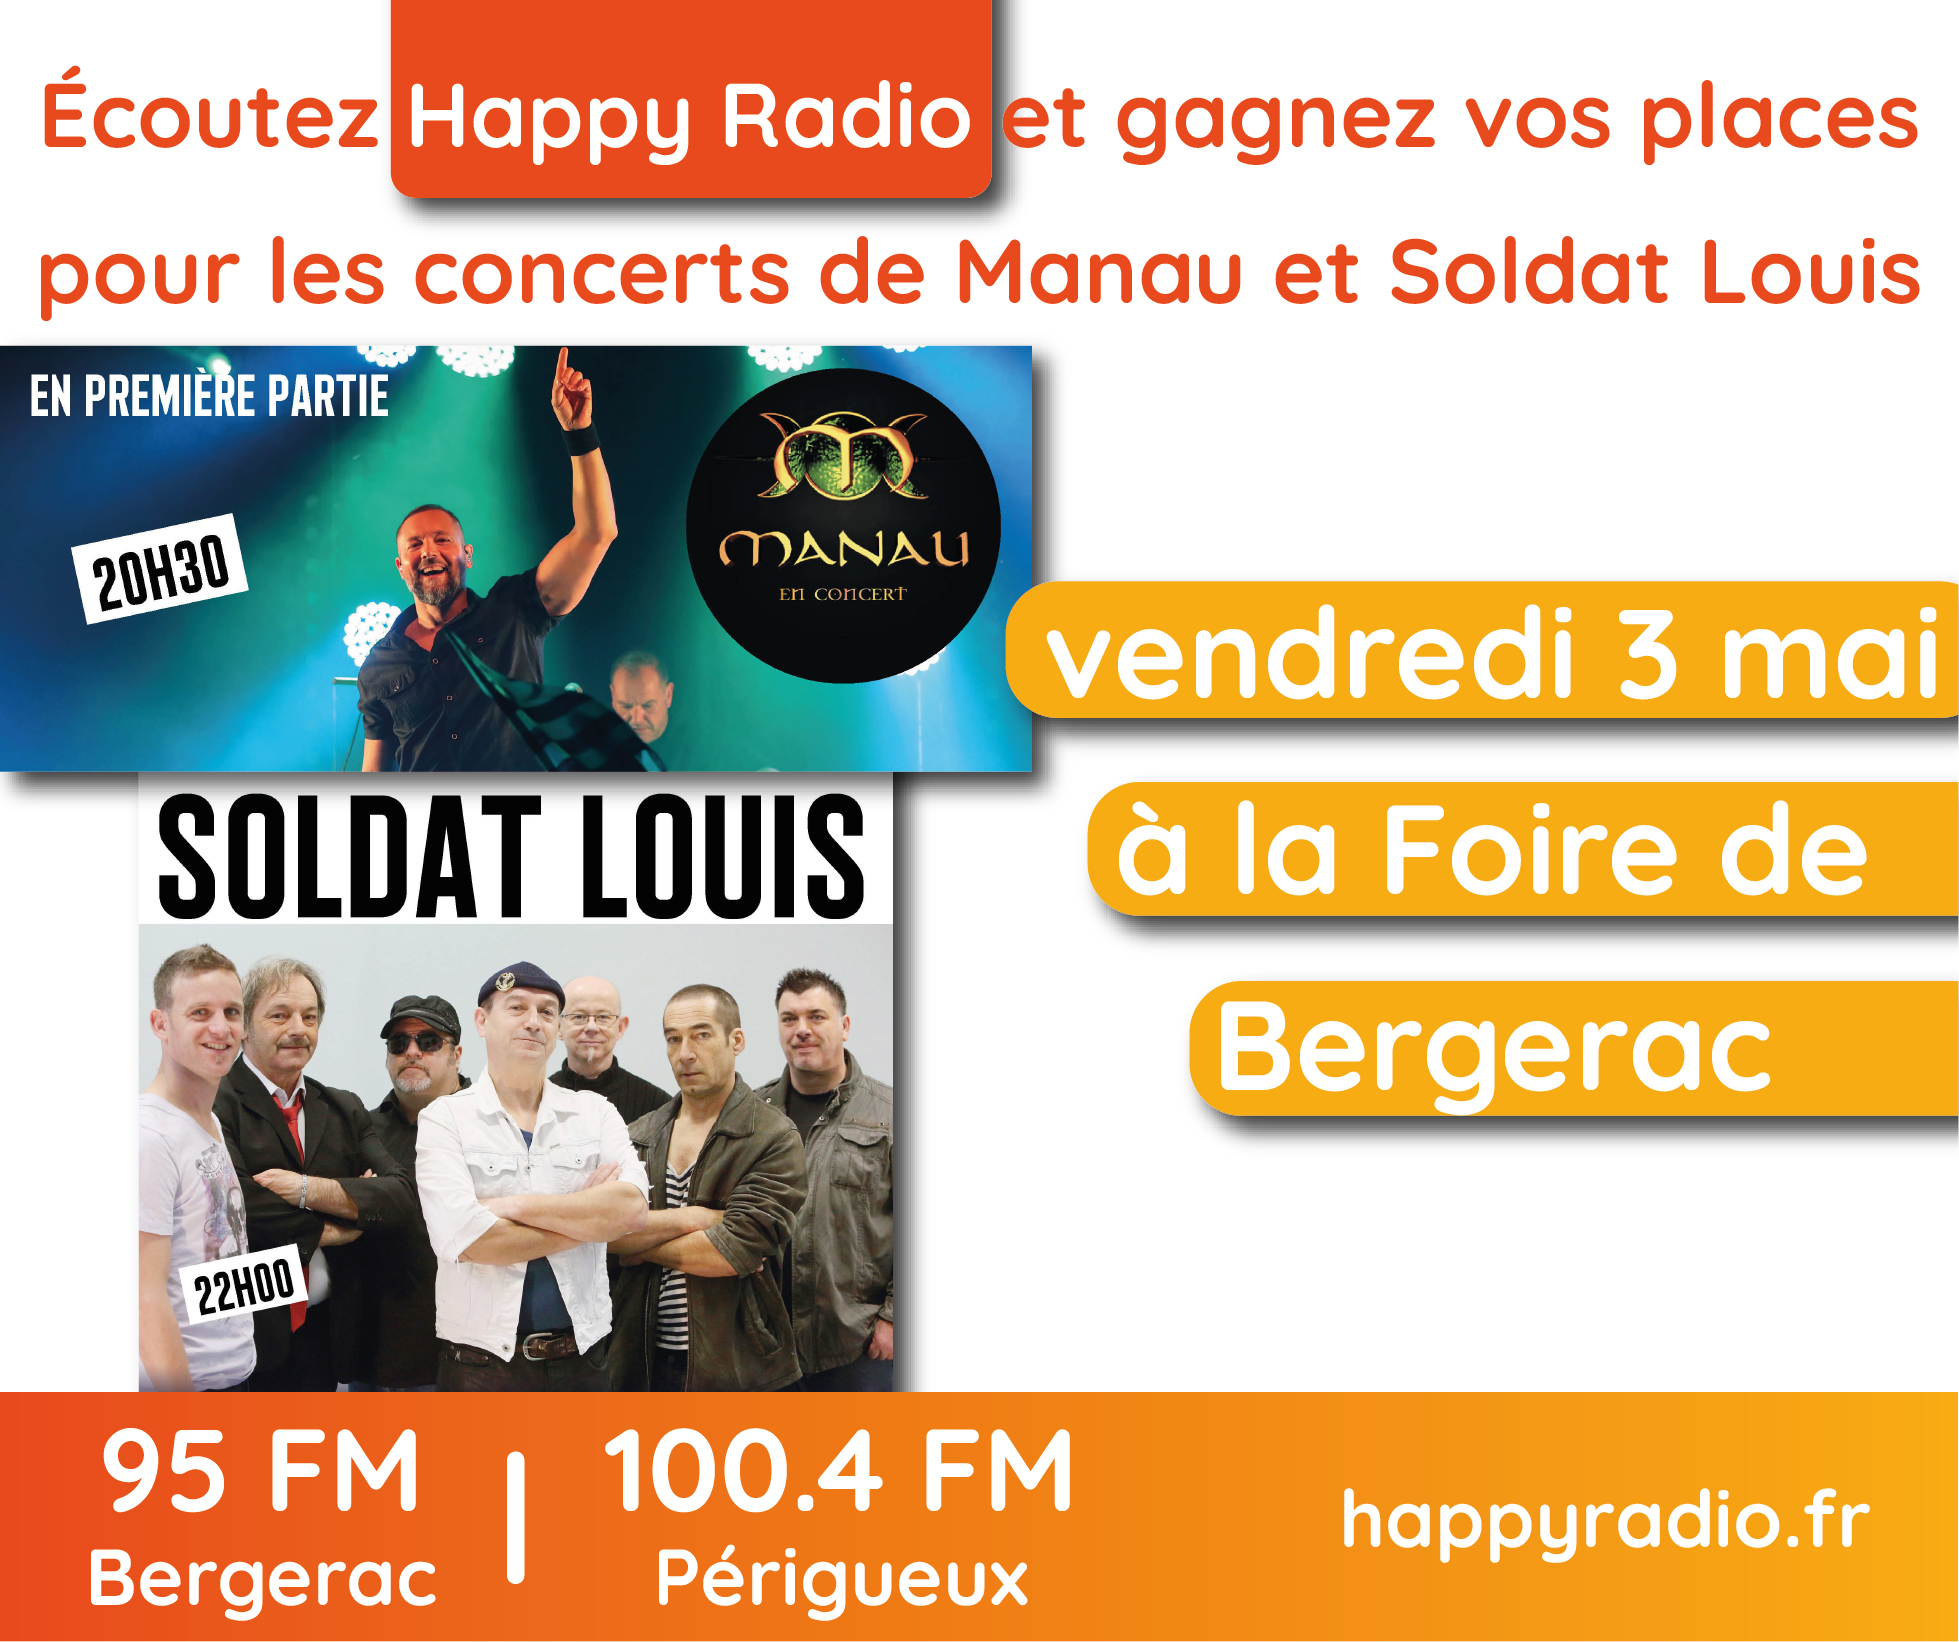 You are currently viewing Écoutez Happy Radio et gagnez vos places pour les concerts de Manau et Soldat Louis